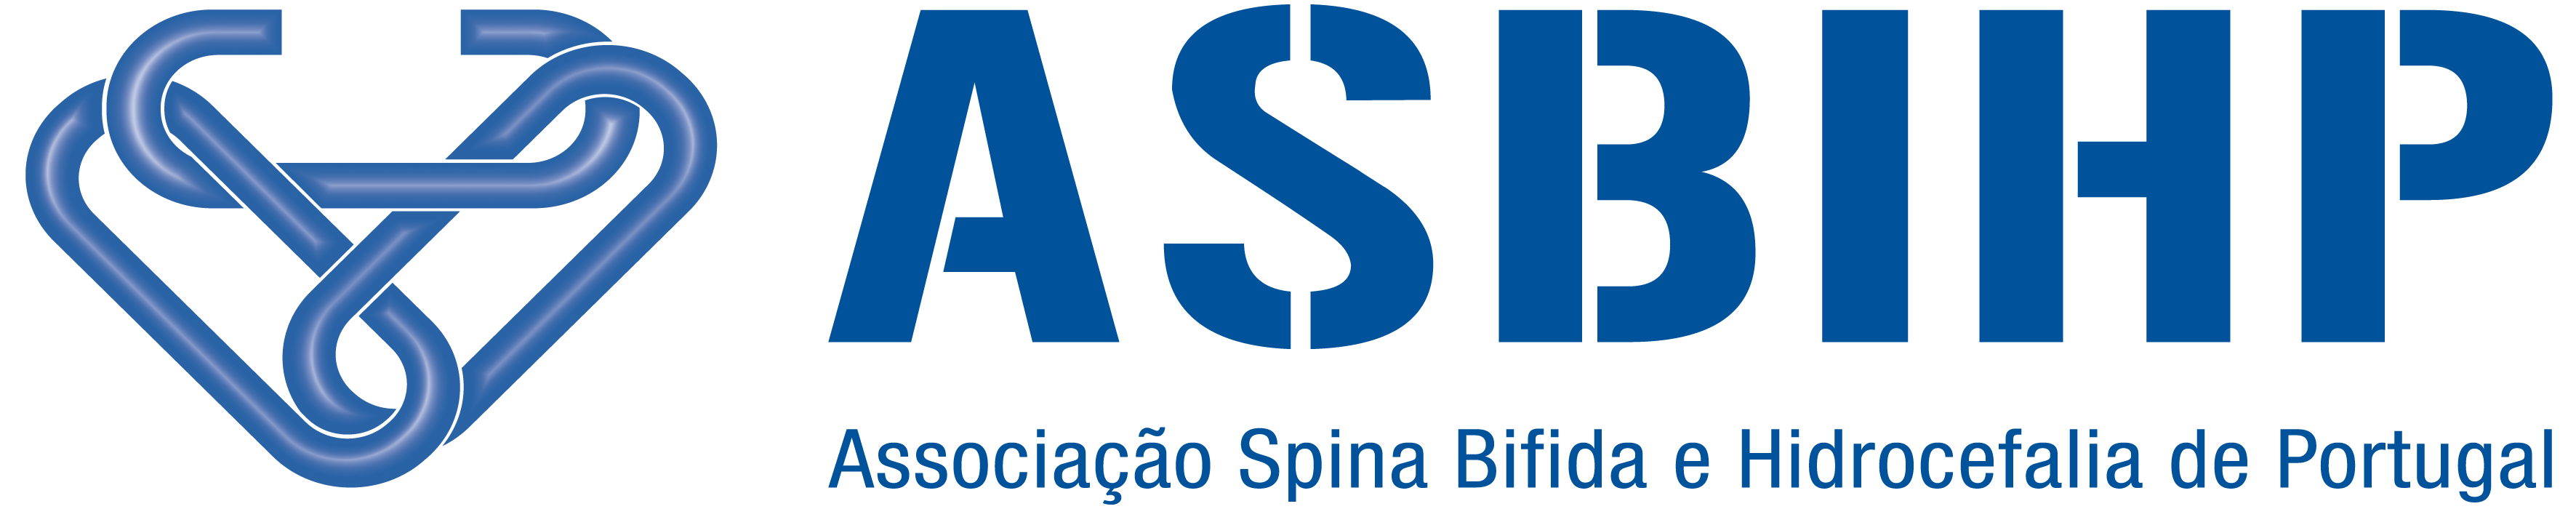 ASBIHP - Associação Spina Bifida e Hidrocefalia de Portugal